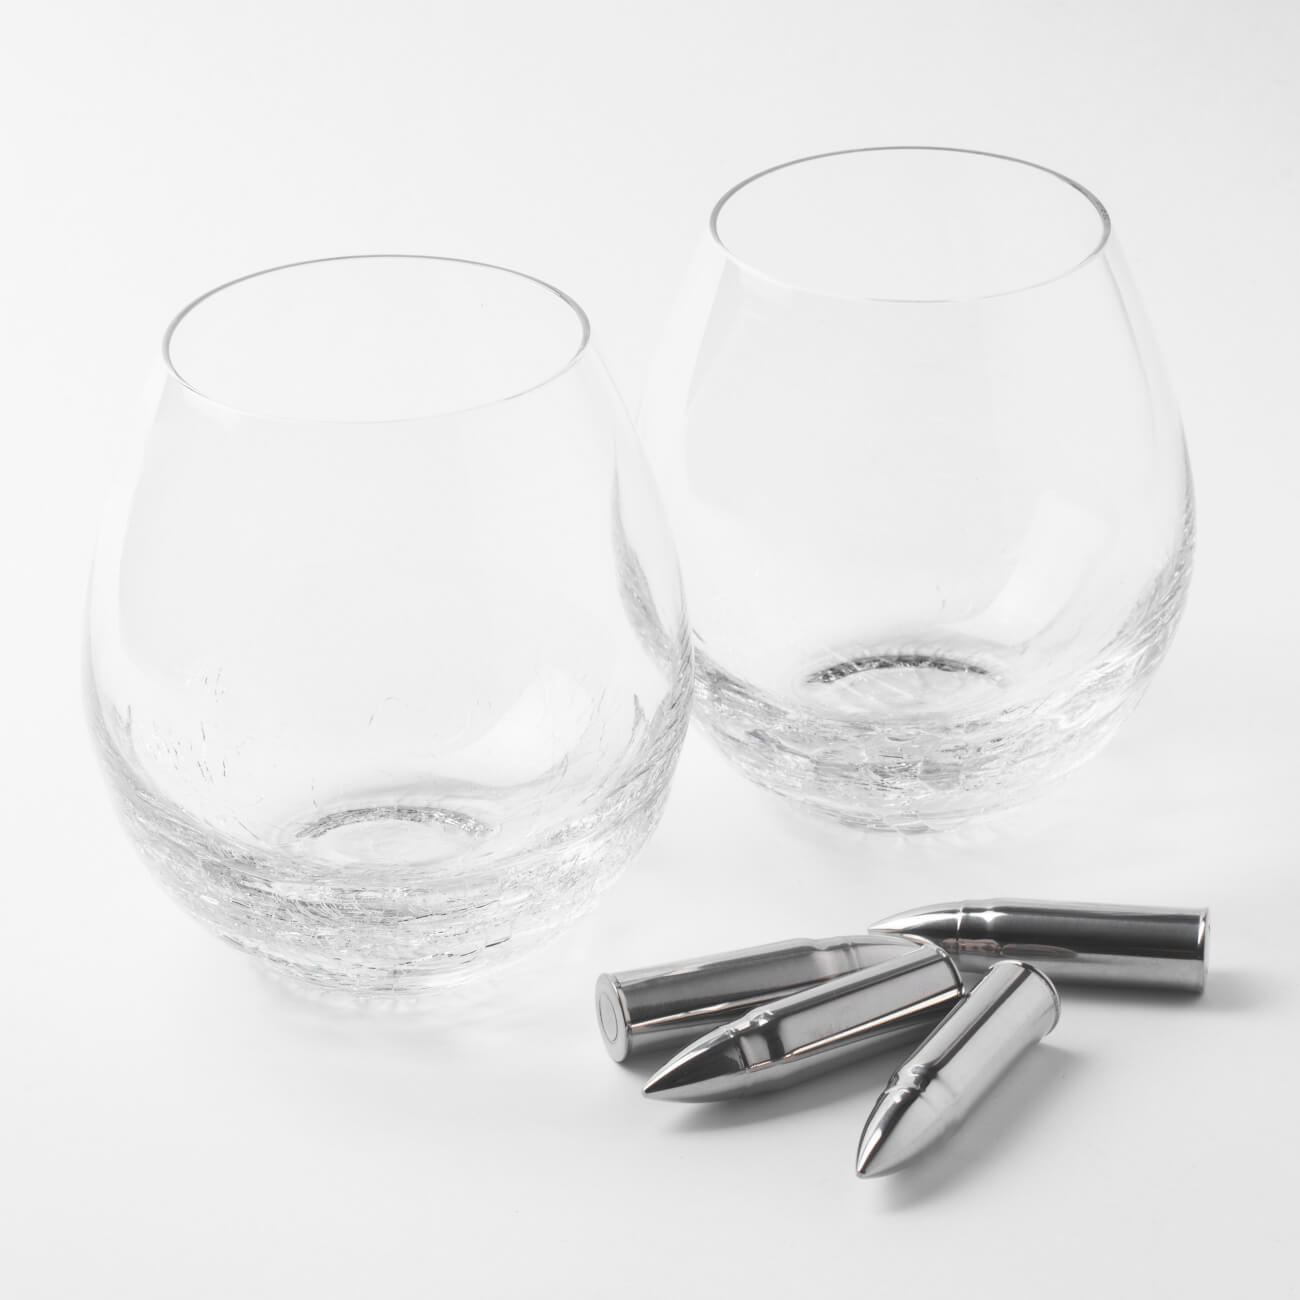 Набор для виски, 2 перс, 6 пр, стаканы/кубики, стекло/сталь, Кракелюр, Пули, Bullet набор для виски 2 перс 4 пр стаканы кубики стекло сталь граната bullet